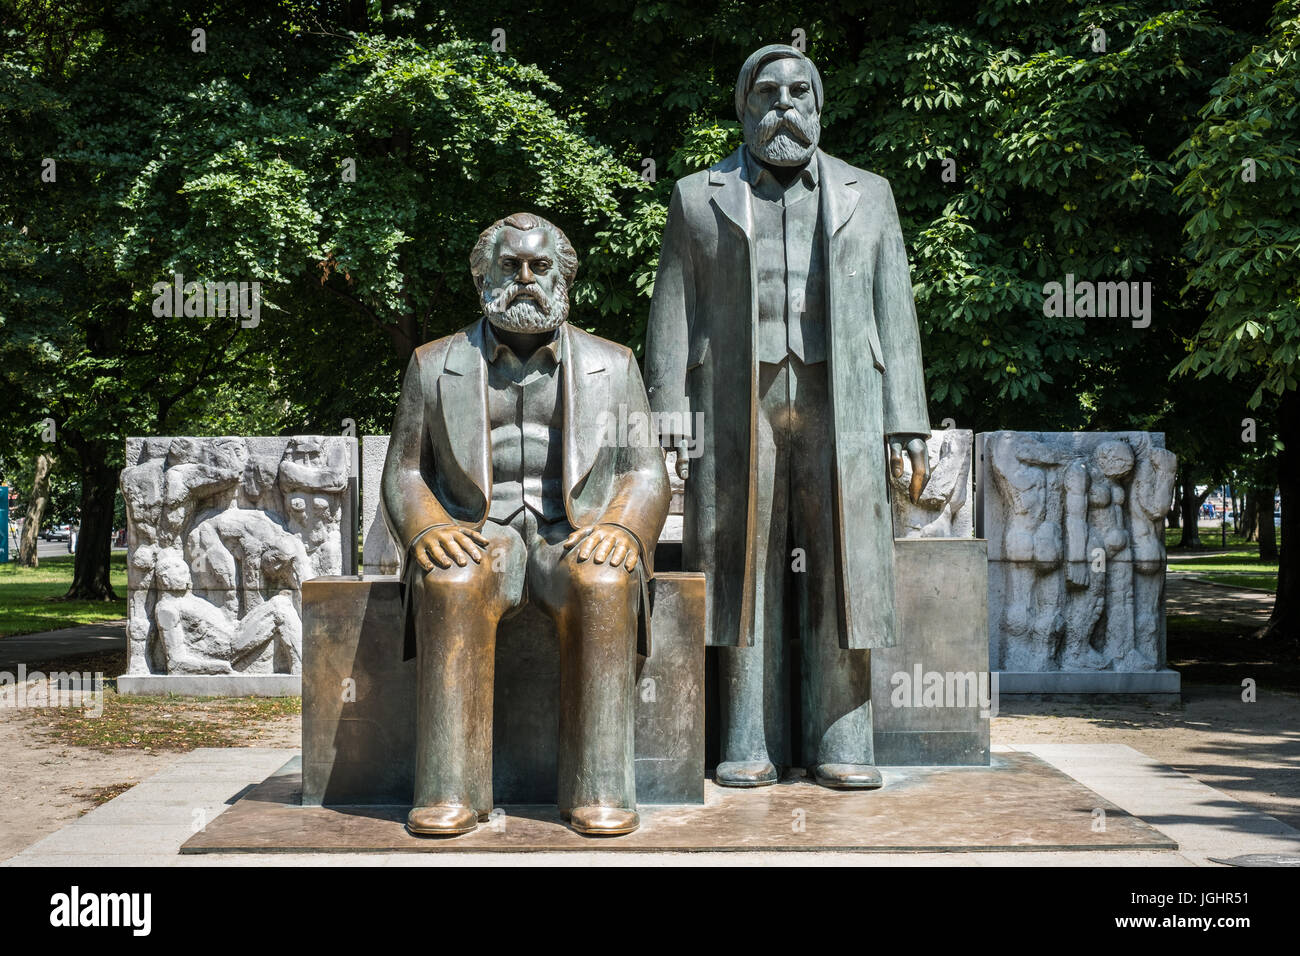 Berlin, Deutschland - 6. Juli 2017: Skulptur von Karl Marx und Friedrich Engels nahe Alexanderplatz in Berlin, Deutschland. Stockfoto